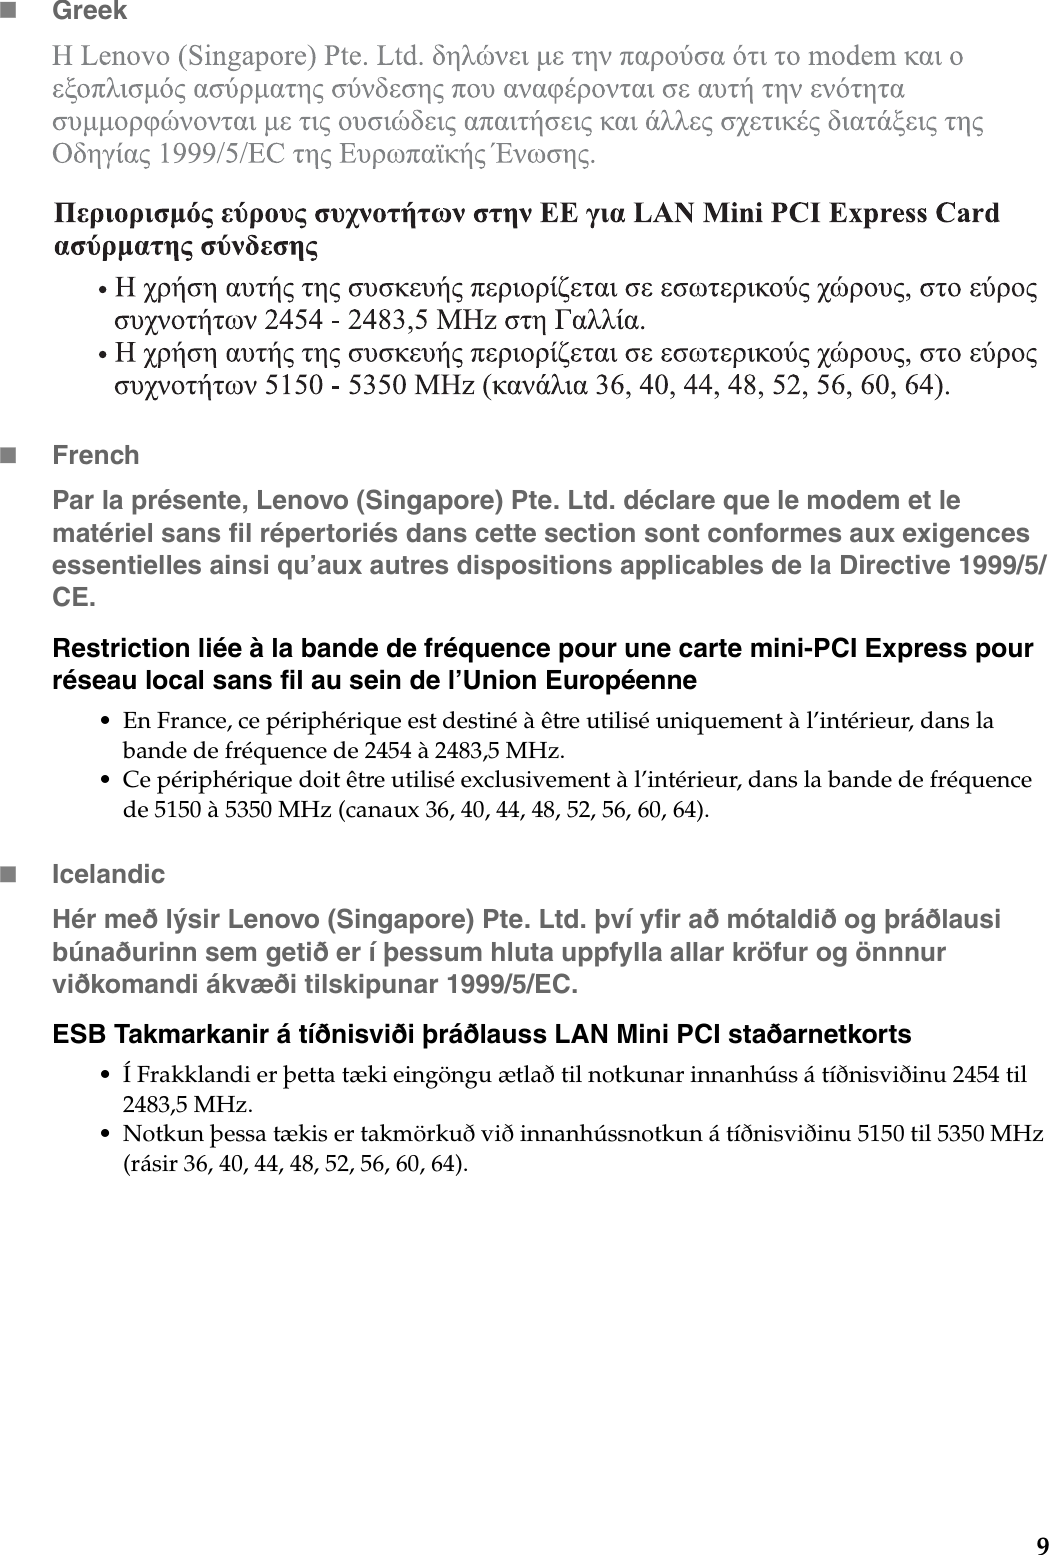 9GreekFrenchPar la présente, Lenovo (Singapore) Pte. Ltd. déclare que le modem et le matériel sans fil répertoriés dans cette section sont conformes aux exigences essentielles ainsi qu’aux autres dispositions applicables de la Directive 1999/5/CE.Restriction liée à la bande de fréquence pour une carte mini-PCI Express pour réseau local sans fil au sein de l’Union Européenne• En France, ce périphérique est destiné à être utilisé uniquement à l’intérieur, dans la bande de fréquence de 2454 à 2483,5 MHz.• Ce périphérique doit être utilisé exclusivement à l’intérieur, dans la bande de fréquence de 5150 à 5350 MHz (canaux 36, 40, 44, 48, 52, 56, 60, 64).IcelandicHér með lýsir Lenovo (Singapore) Pte. Ltd. því yfir að mótaldið og þráðlausi búnaðurinn sem getið er í þessum hluta uppfylla allar kröfur og önnnur viðkomandi ákvæði tilskipunar 1999/5/EC.ESB Takmarkanir á tíðnisviði þráðlauss LAN Mini PCI staðarnetkorts• Í Frakklandi er þetta tæki eingöngu ætlað til notkunar innanhúss á tíðnisviðinu 2454 til 2483,5 MHz.• Notkun þessa tækis er takmörkuð við innanhússnotkun á tíðnisviðinu 5150 til 5350 MHz (rásir 36, 40, 44, 48, 52, 56, 60, 64).